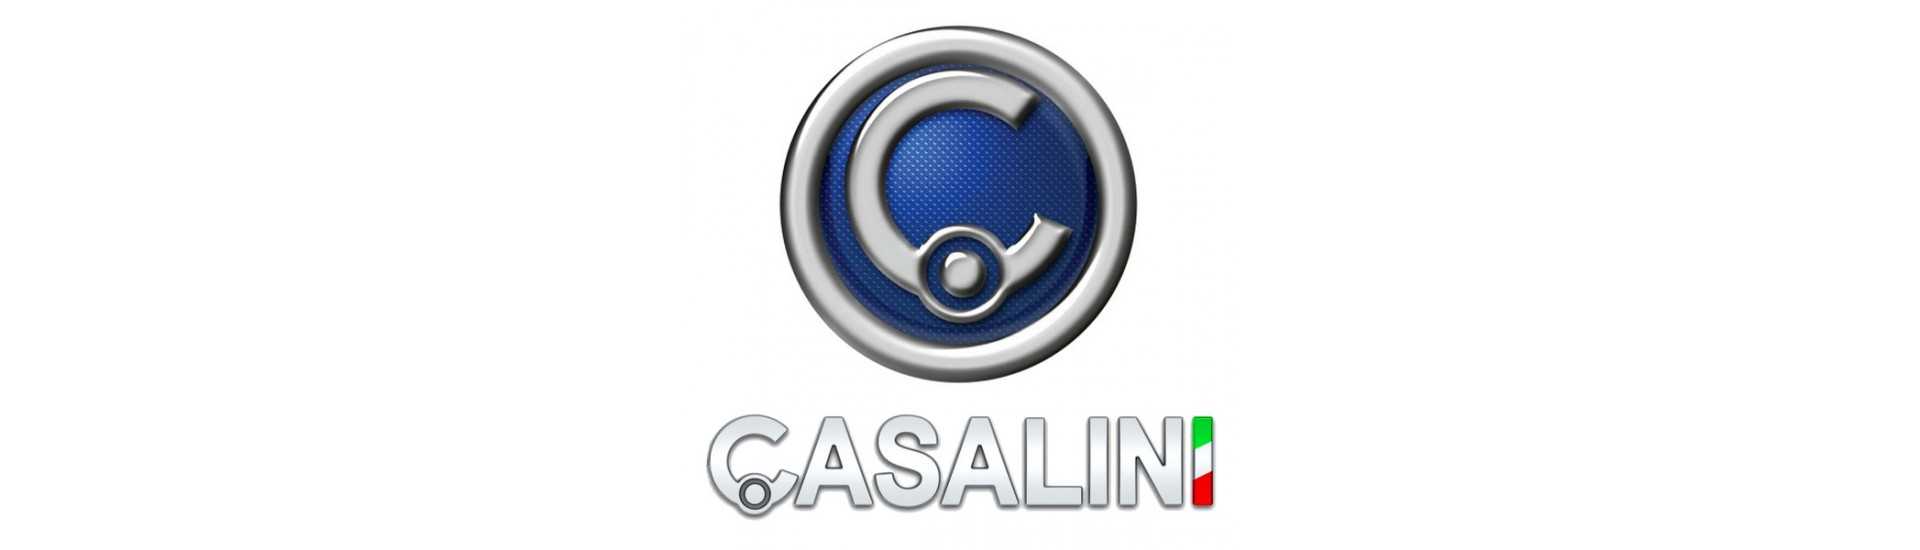 triângulo frontal ao melhor preço para o carro sem uma permissão Casalini